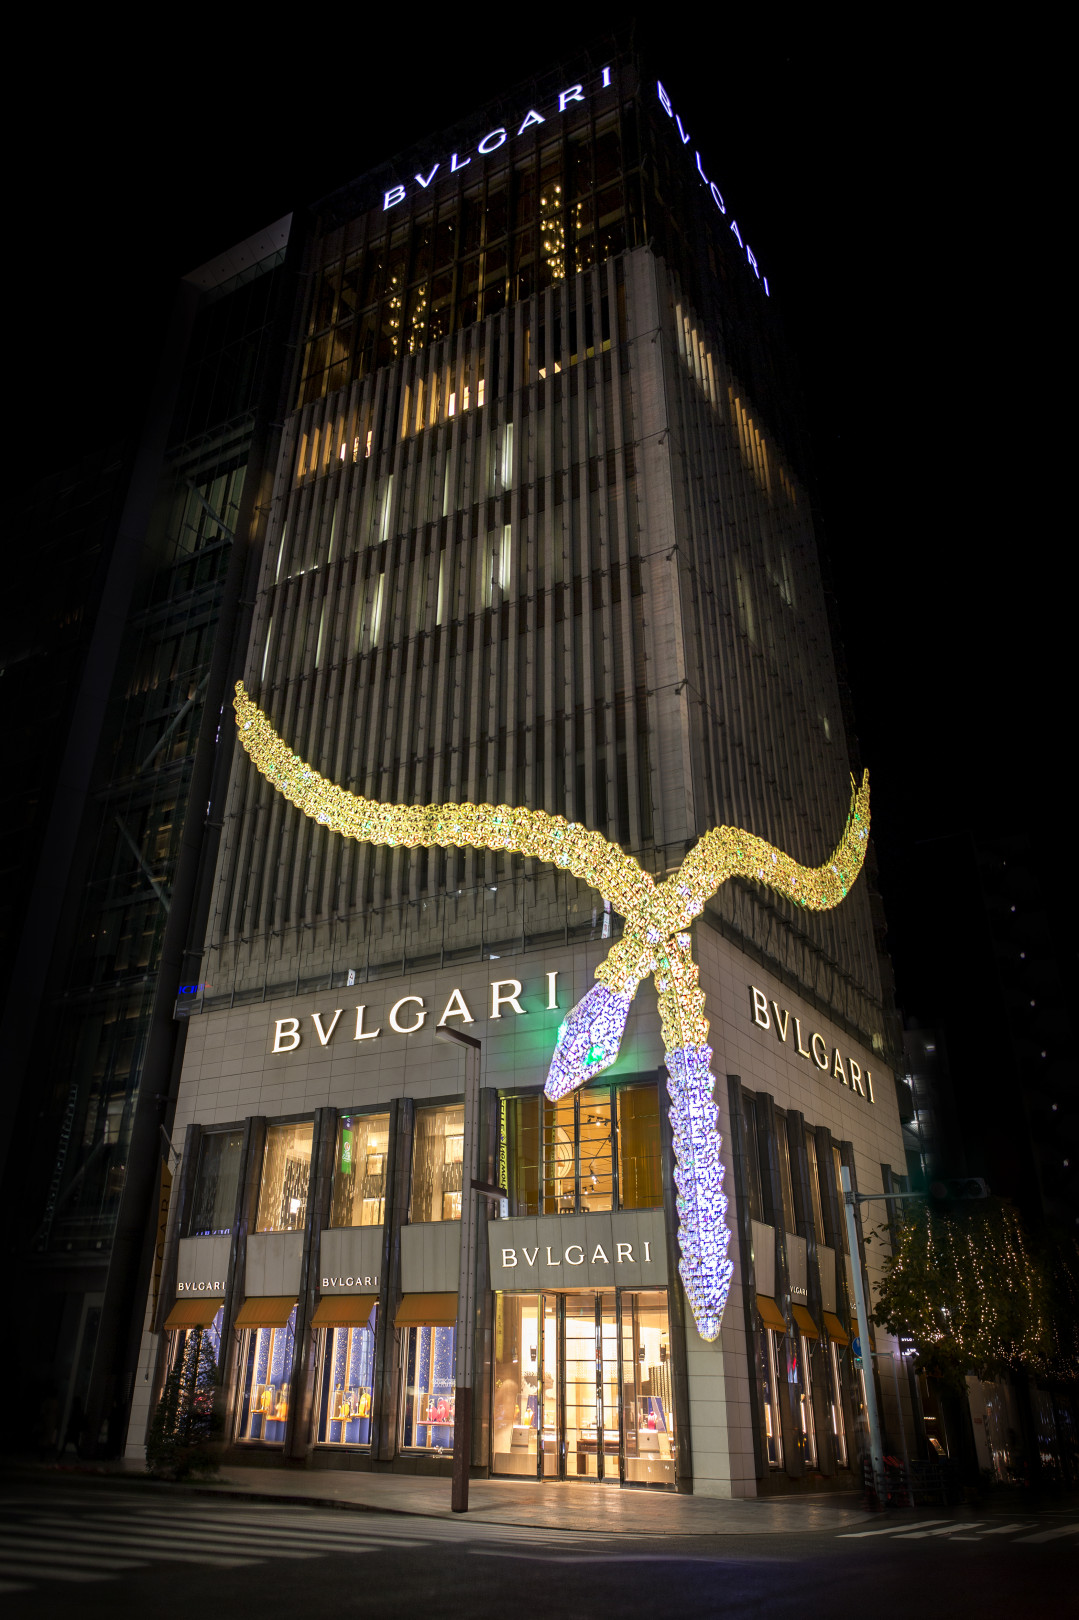 ブルガリ×チームラボの作品展示、銀座タワーを彩る光り輝く蛇はブランドアイコンをモチーフに